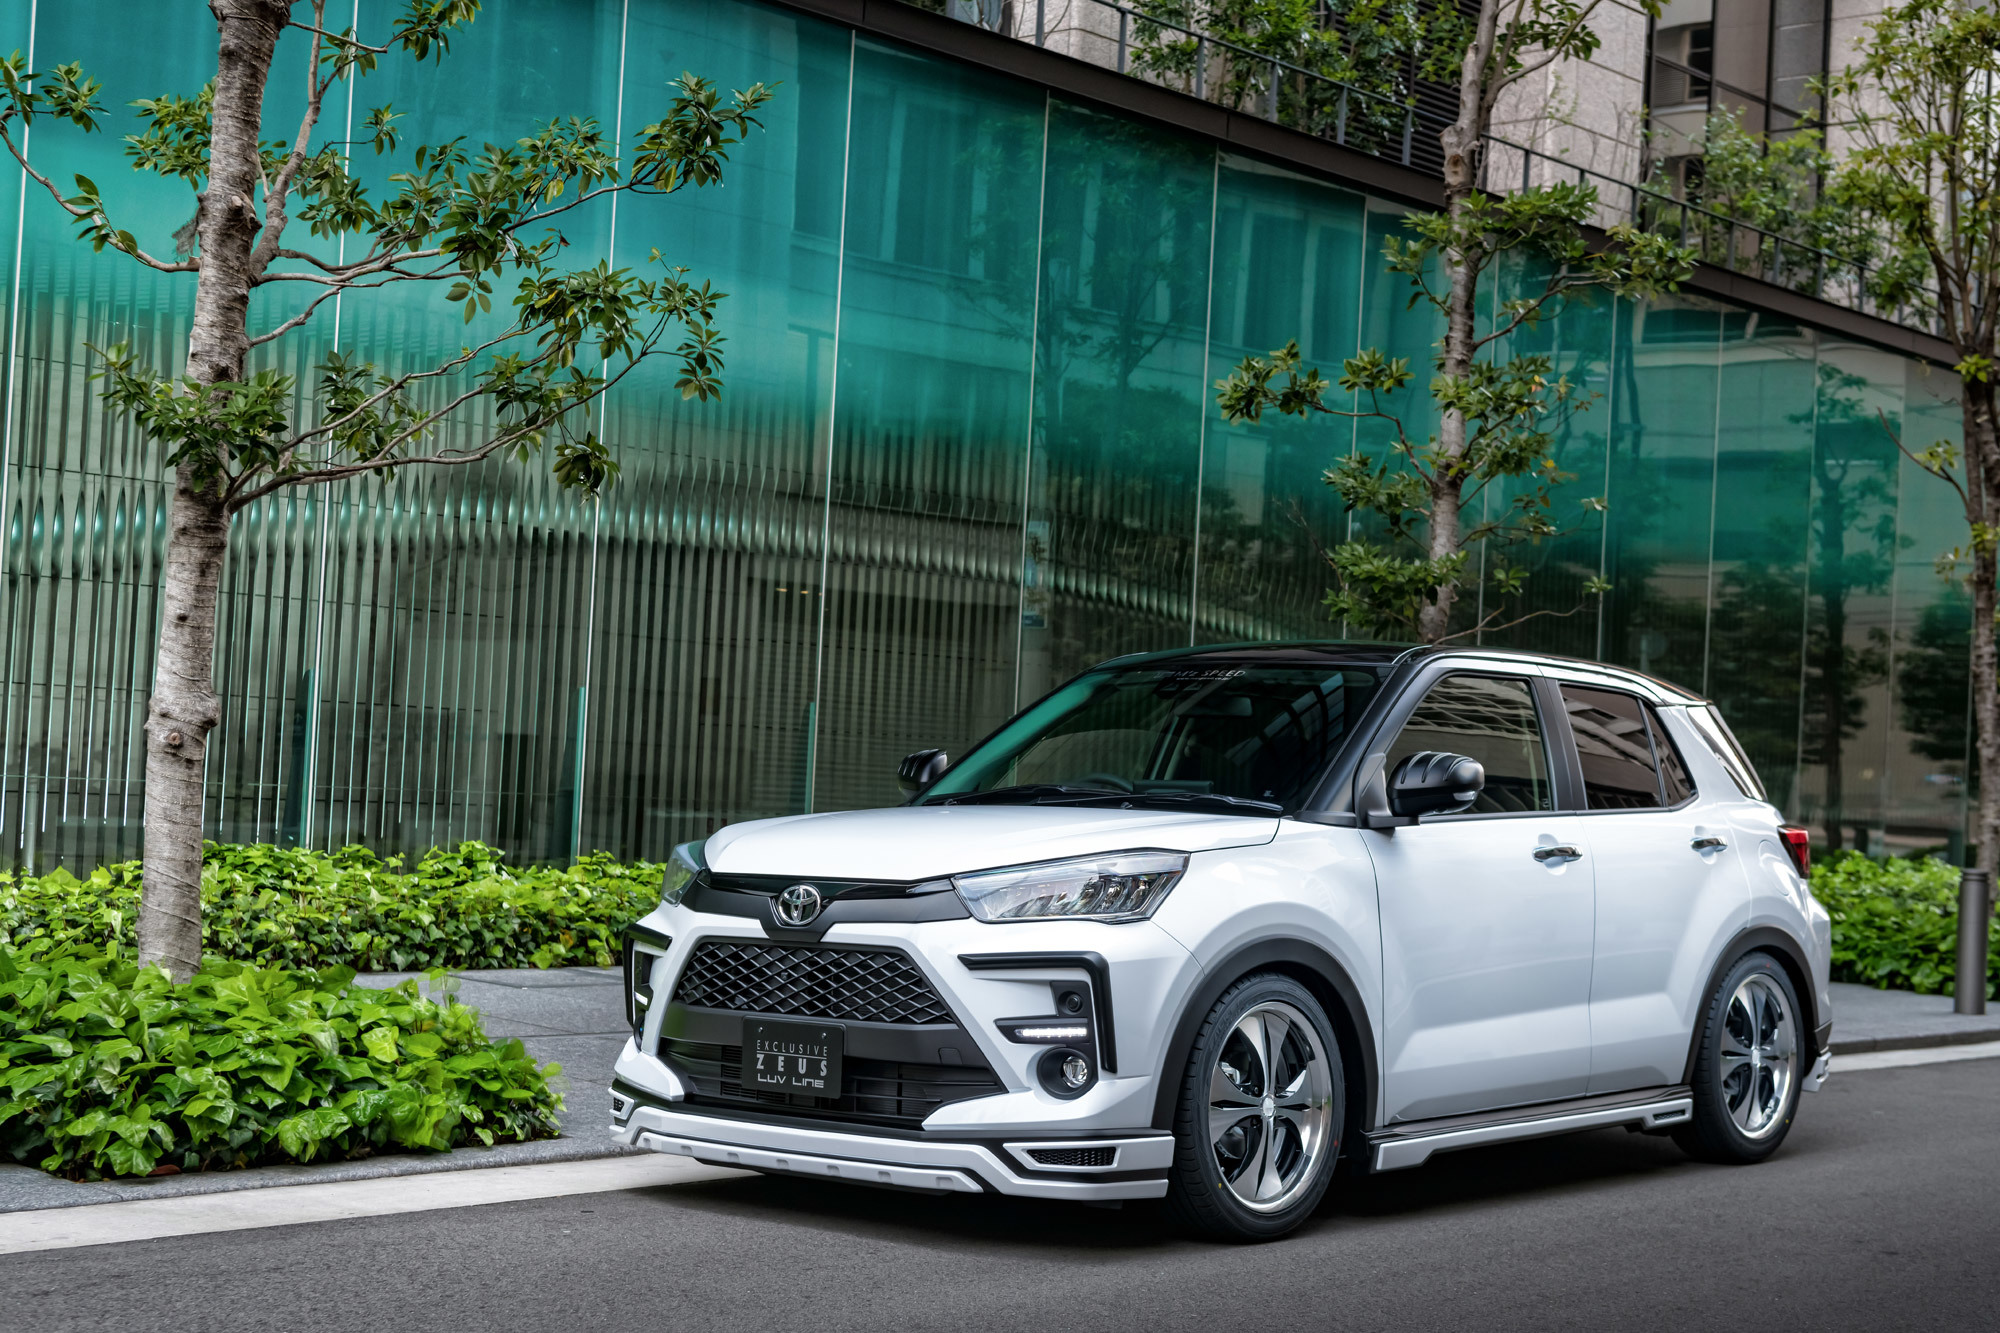 M'z Speed body kit for Toyota Raize latest model